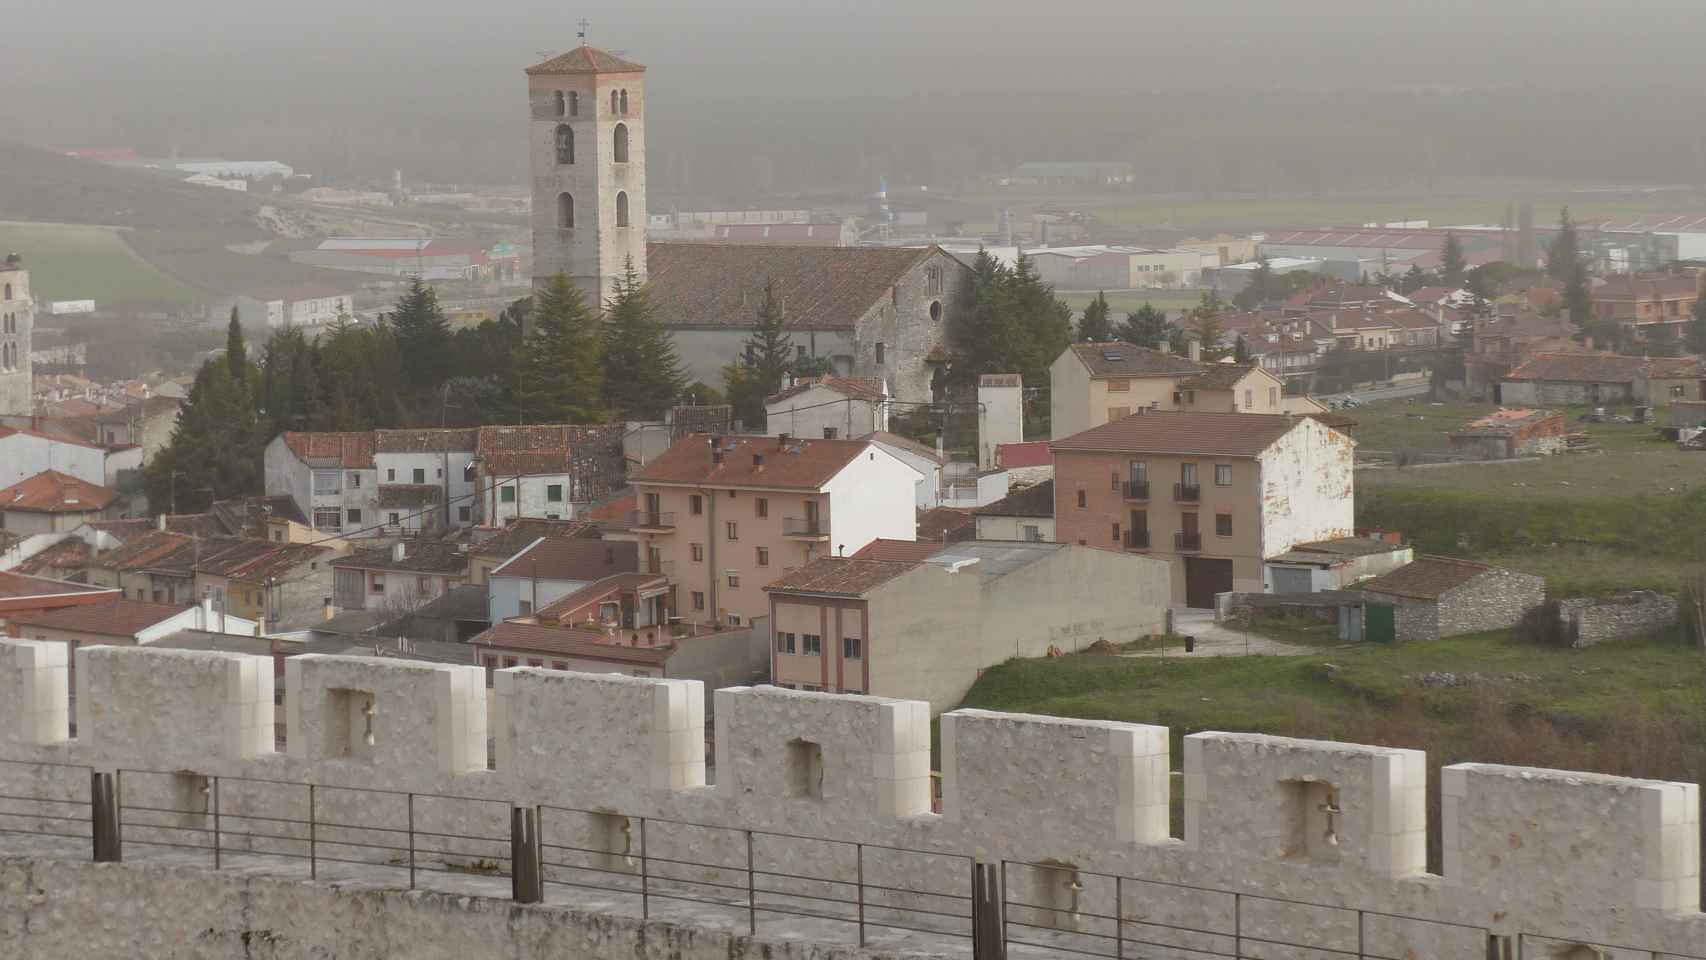 En Cuéllar, Segovia, se han registrado -11,4ºC a las siete y media de la mañana del lunes 07/01/19. Benjamín Núñez González / Wikimedia Commons